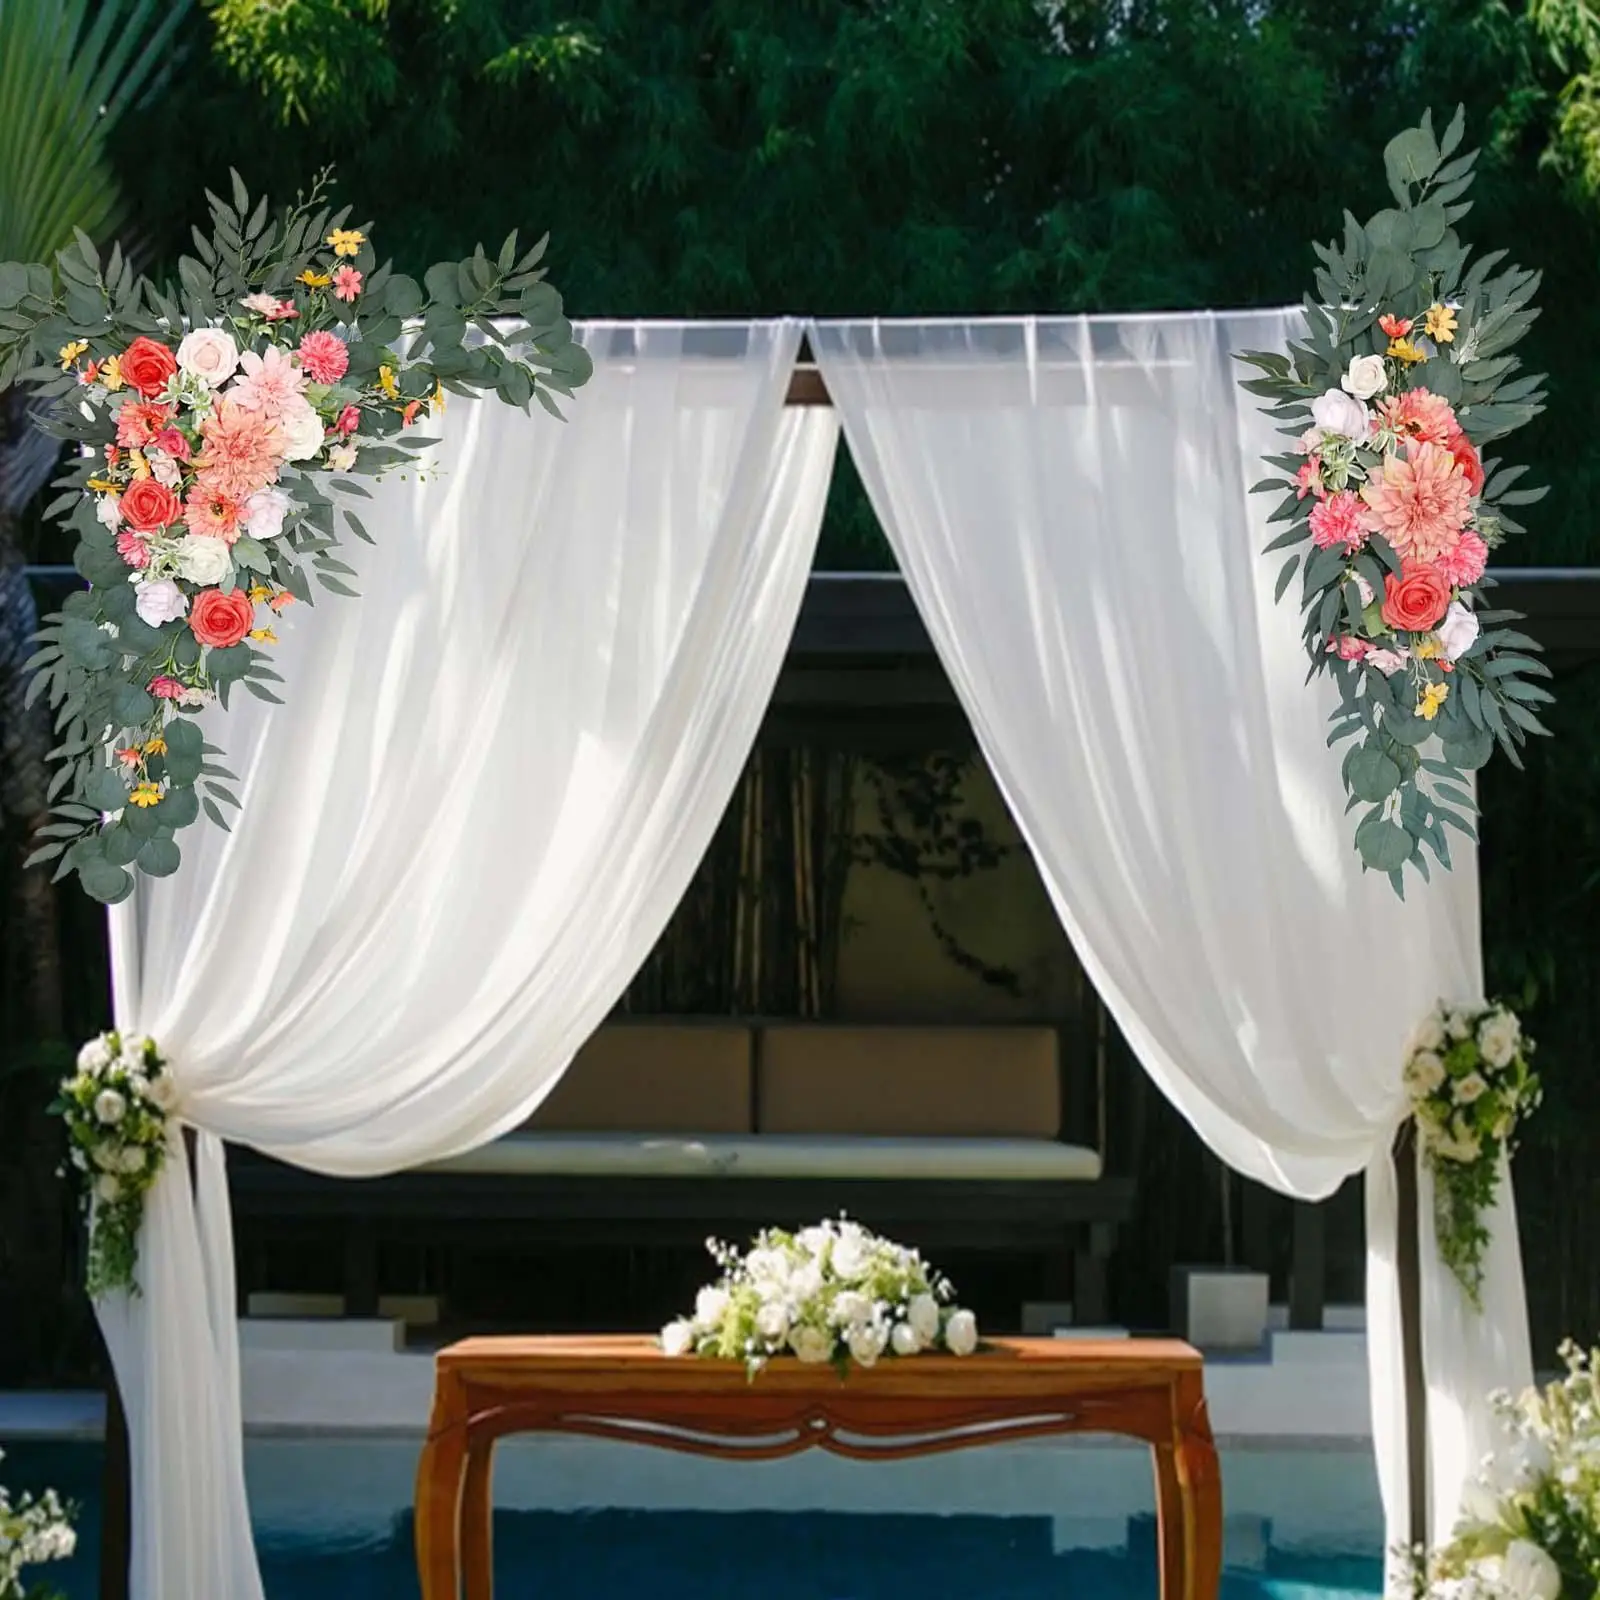 2Pcs Wedding Arch Flowers Floral Arrangement Centerpiece Wreath Arch Decor for Wedding Event Party Table Decorations